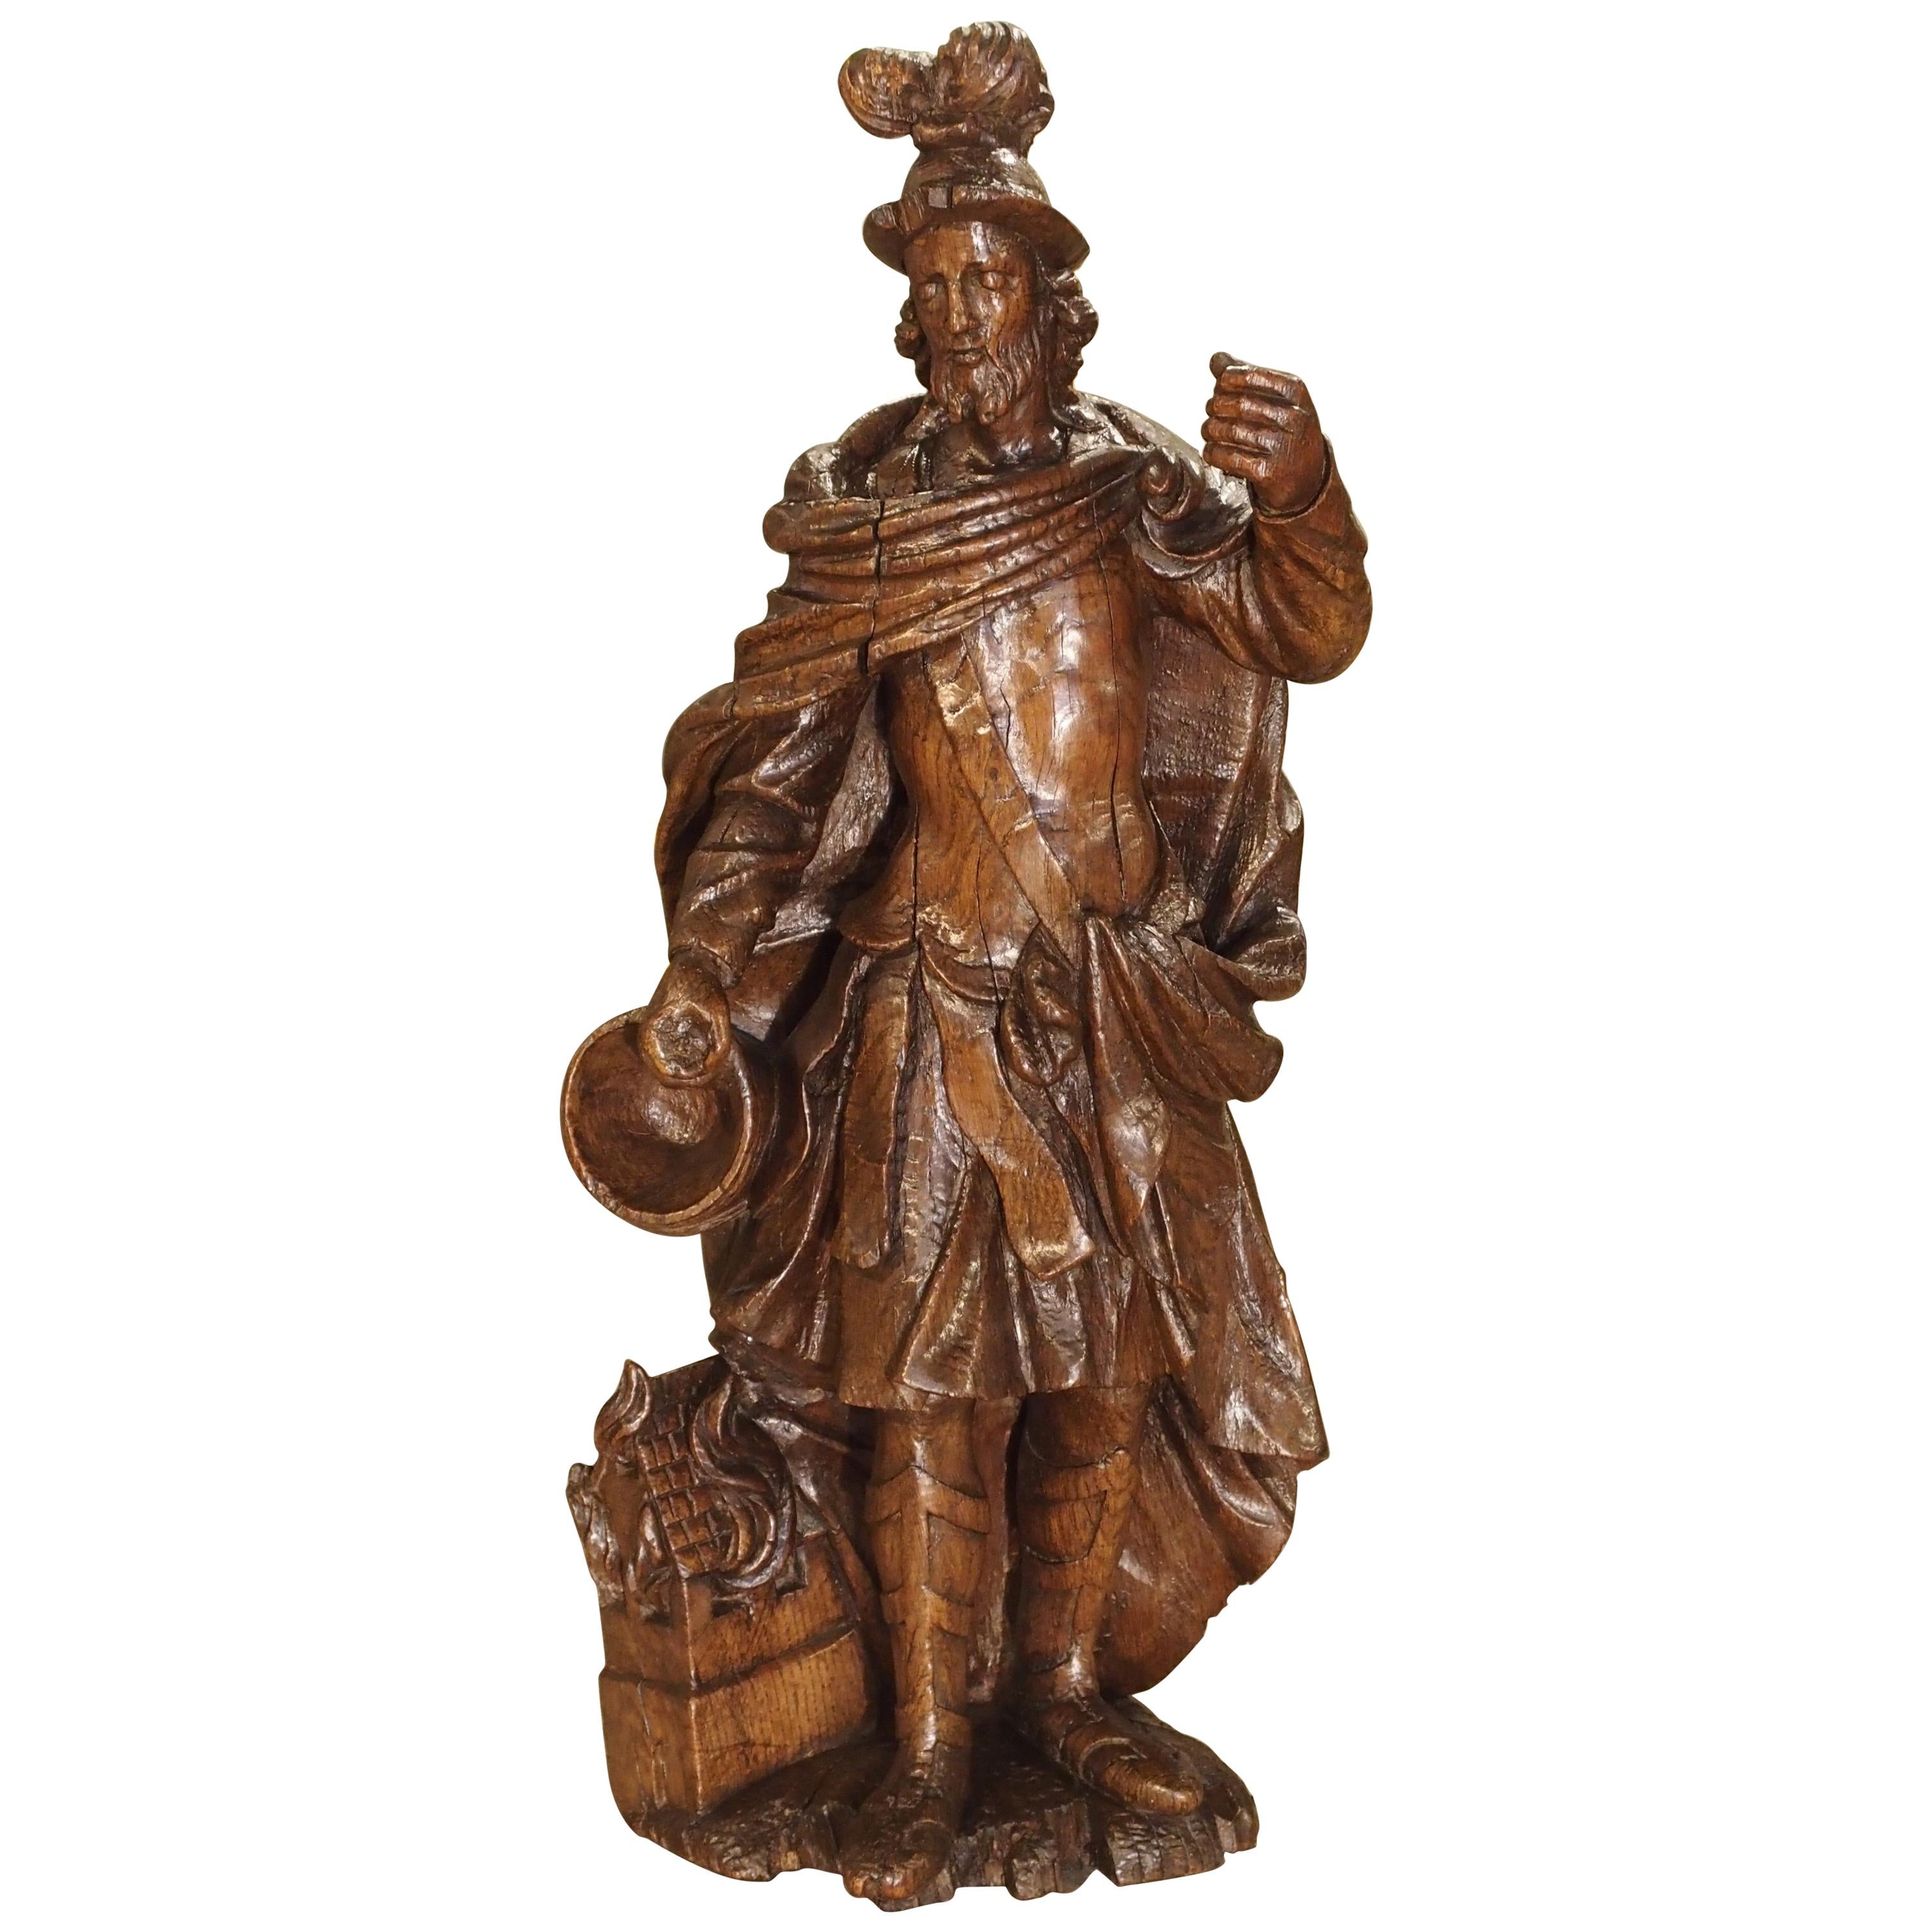 Merveilleuse statue en chêne du XVIIe siècle de Saint Florian, patron des pompiers